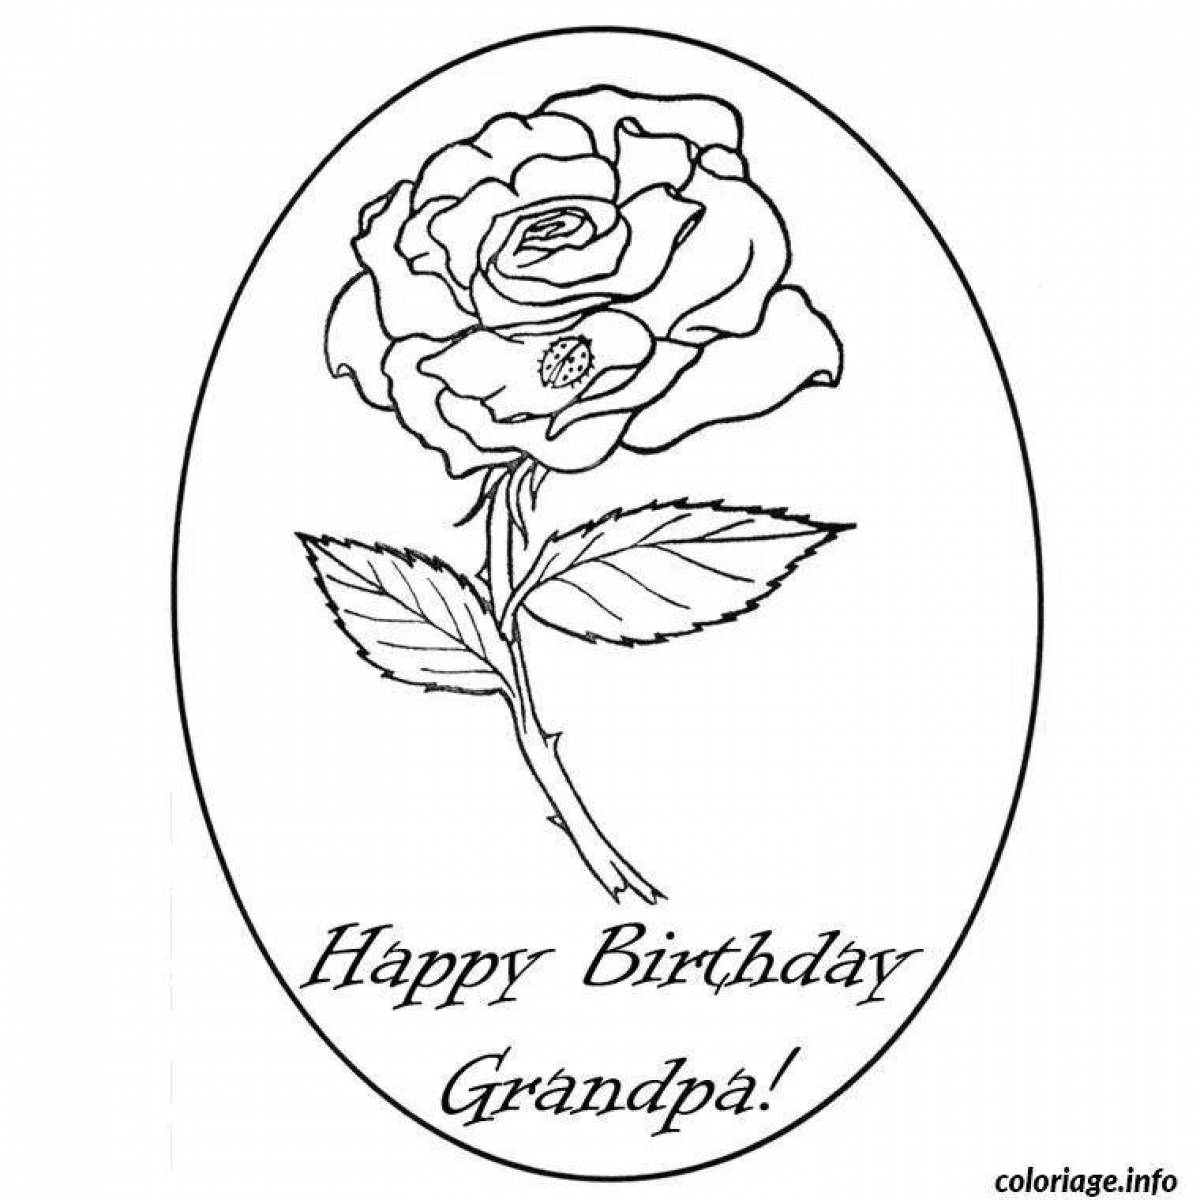 что можно нарисовать на день рождения бабушке